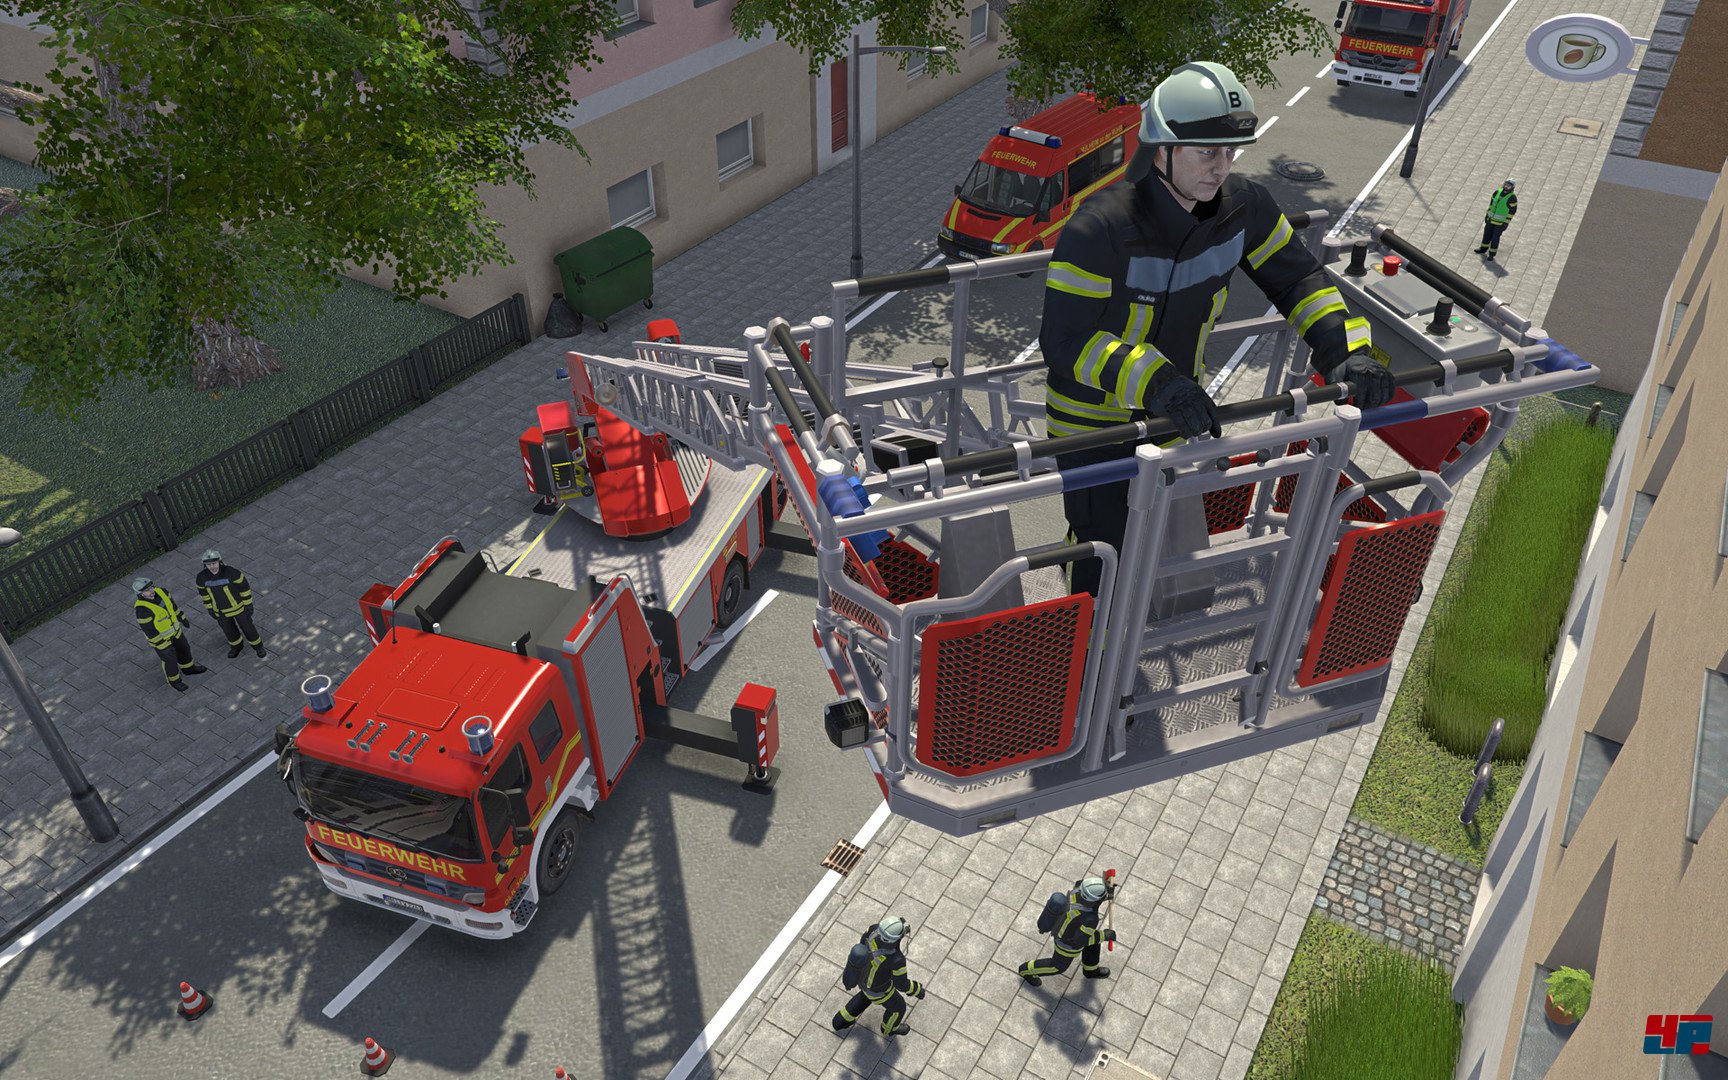 Notruf 112 - Die Feuerwehr Simulation: Performance-Verbesserungen und  Ausblick auf 2017 inklusive Multiplayer